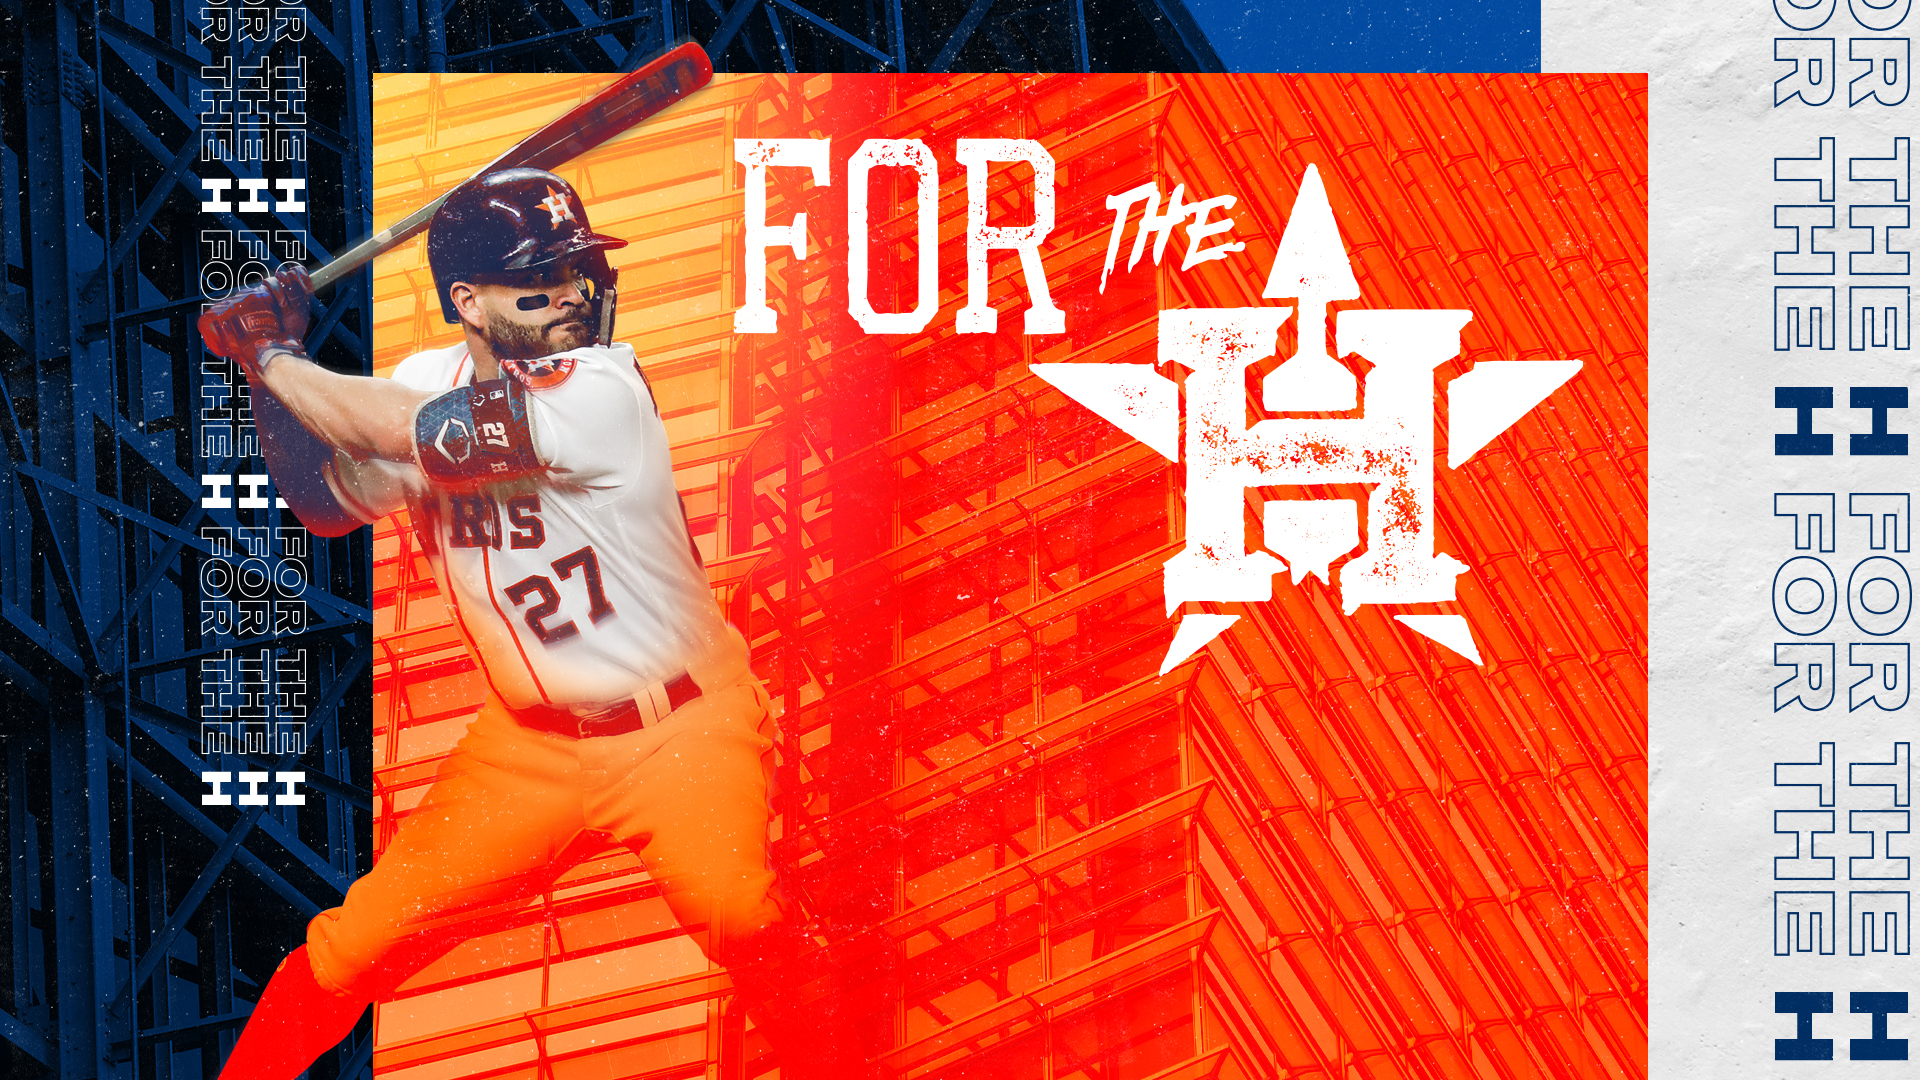 Wallpaper de los Astros | Los Astros de Houston